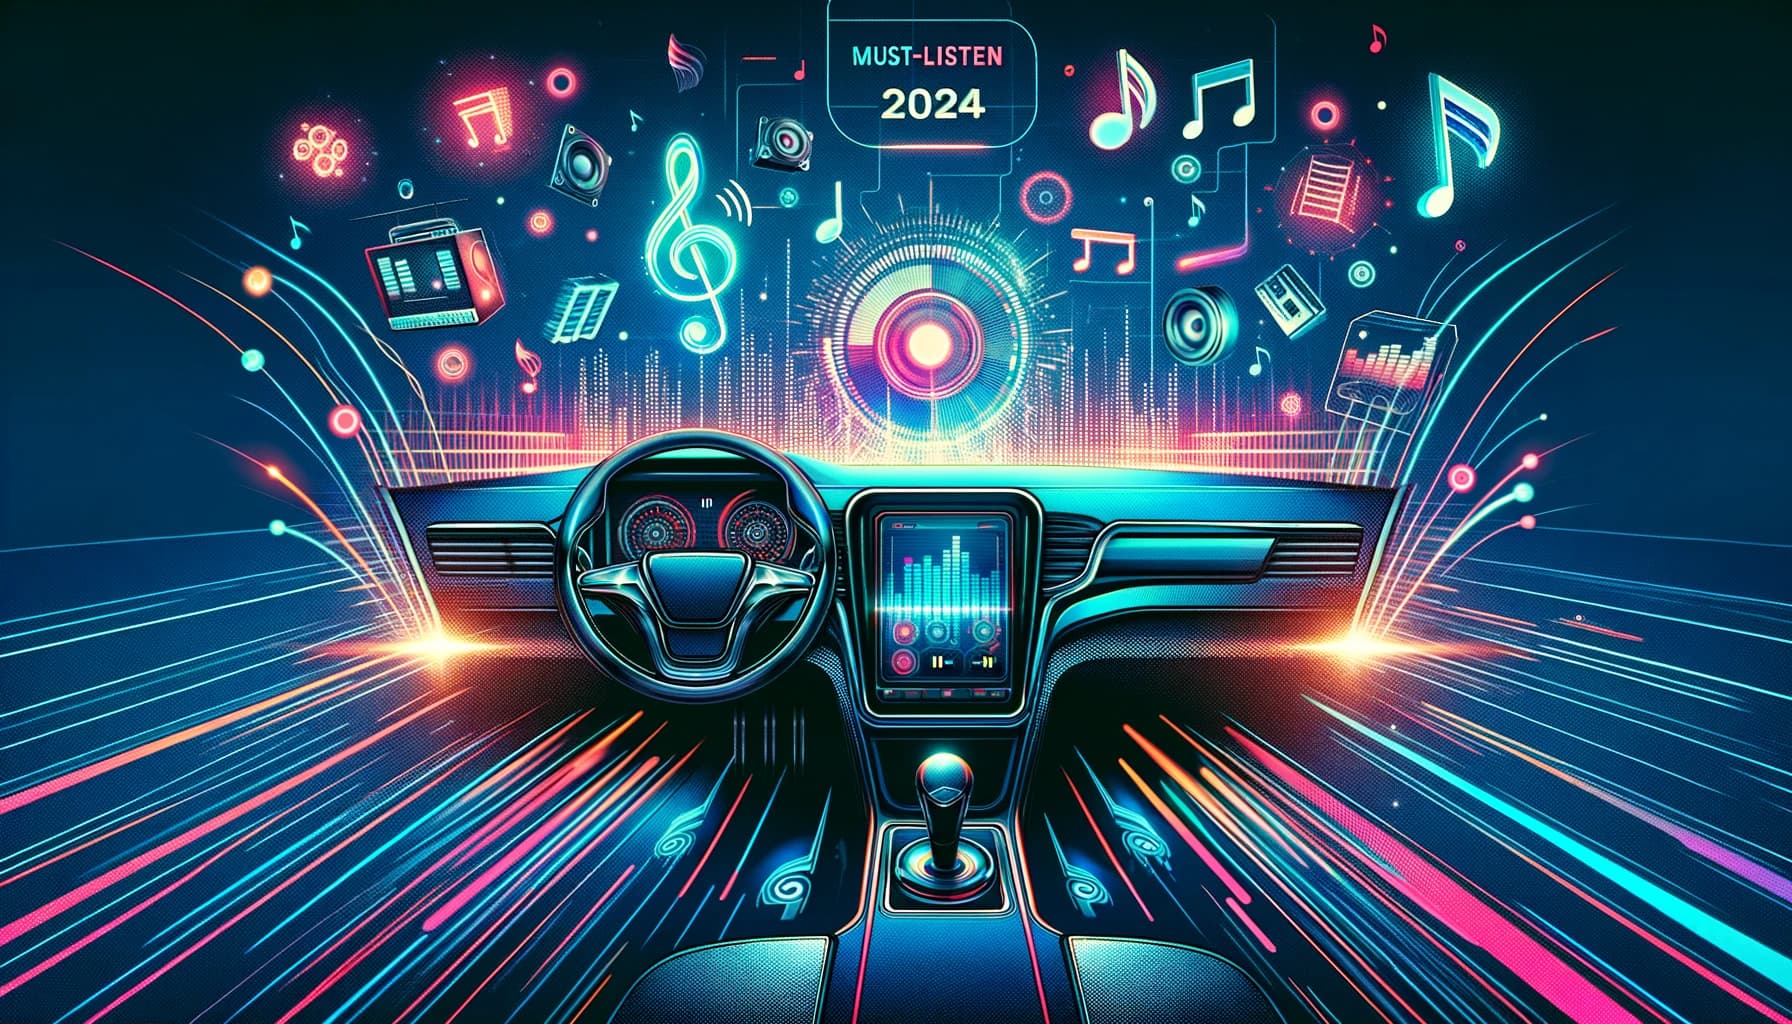 【2024年必听】车载音乐下载MP3、DJ榜单：驾驶者的终极播放清单